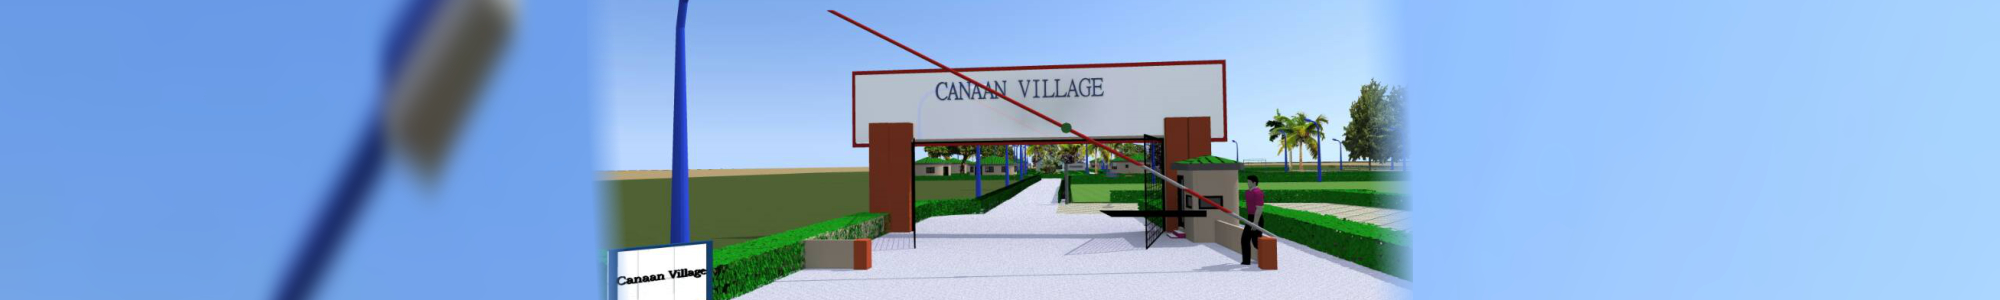 canaan village